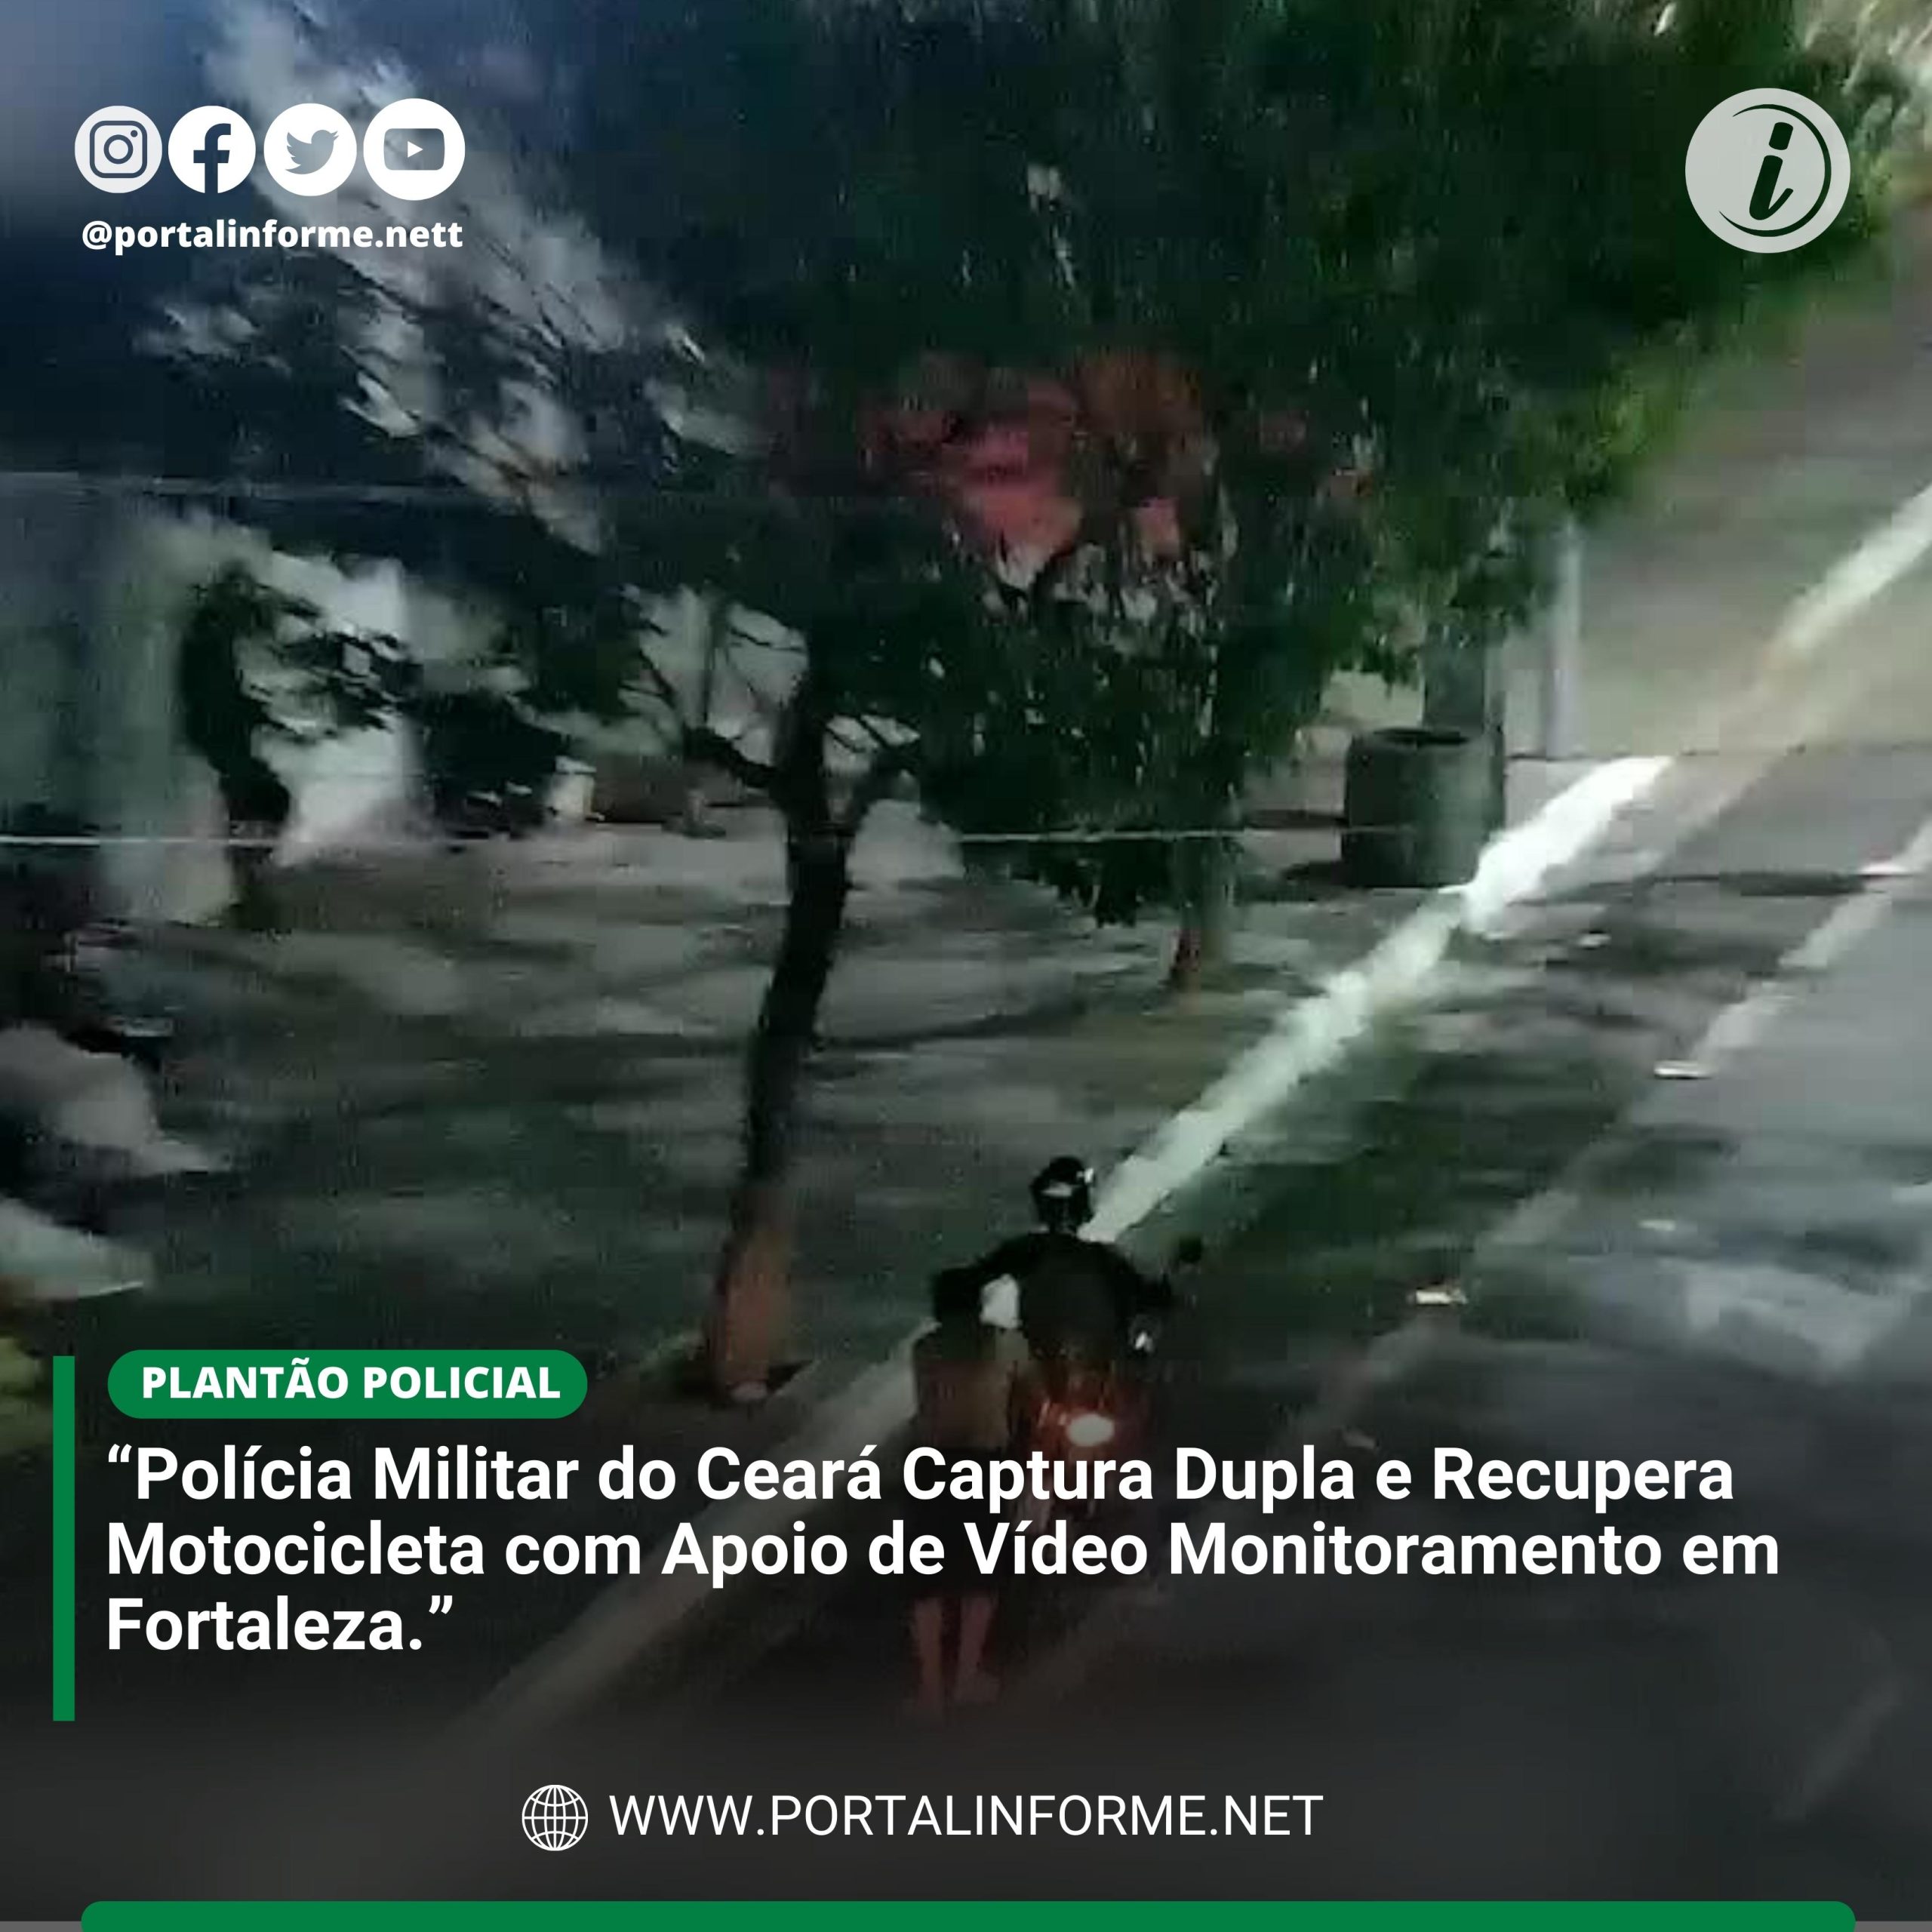 Policia-Militar-do-Ceara-Captura-Dupla-e-Recupera-Motocicleta-com-Apoio-de-Video-Monitoramento-scaled.jpg